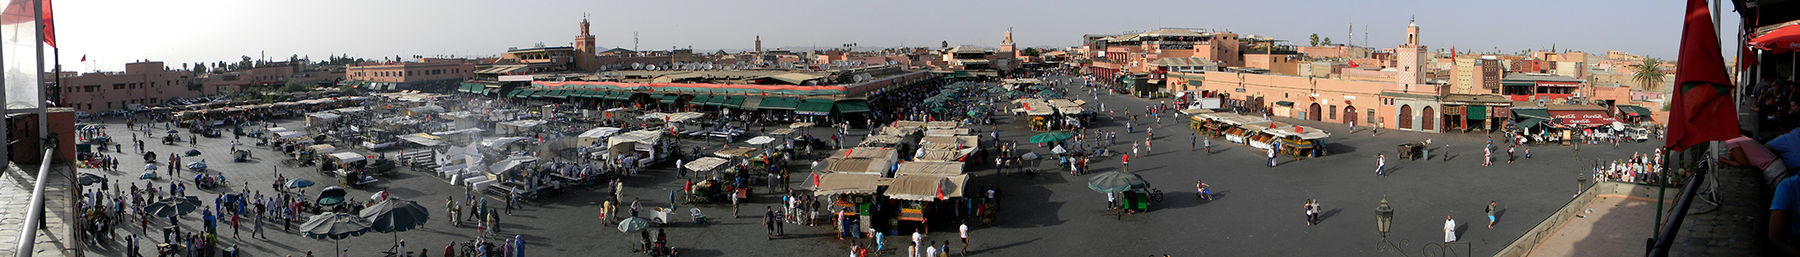 Marrakech banner.jpg